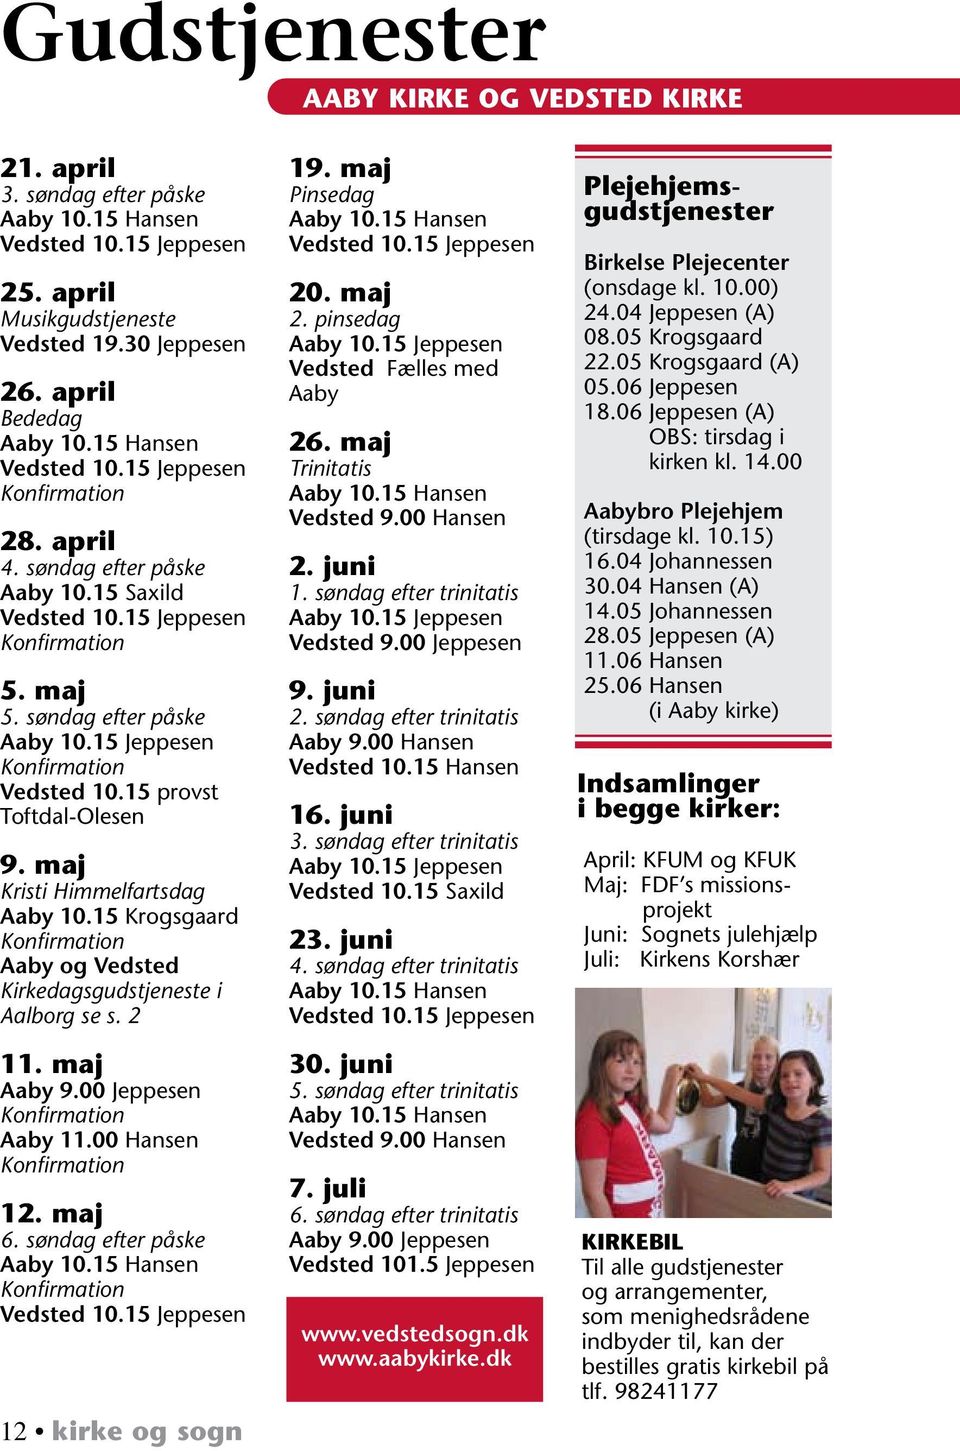 15 Krogsgaard Aaby og Vedsted Kirkedagsgudstjeneste i Aalborg se s. 2 11. maj Aaby 9.00 Jeppesen Aaby 11.00 Hansen 12. maj 6. søndag efter påske Vedsted 10.15 Jeppesen 12 kirke og sogn 19.